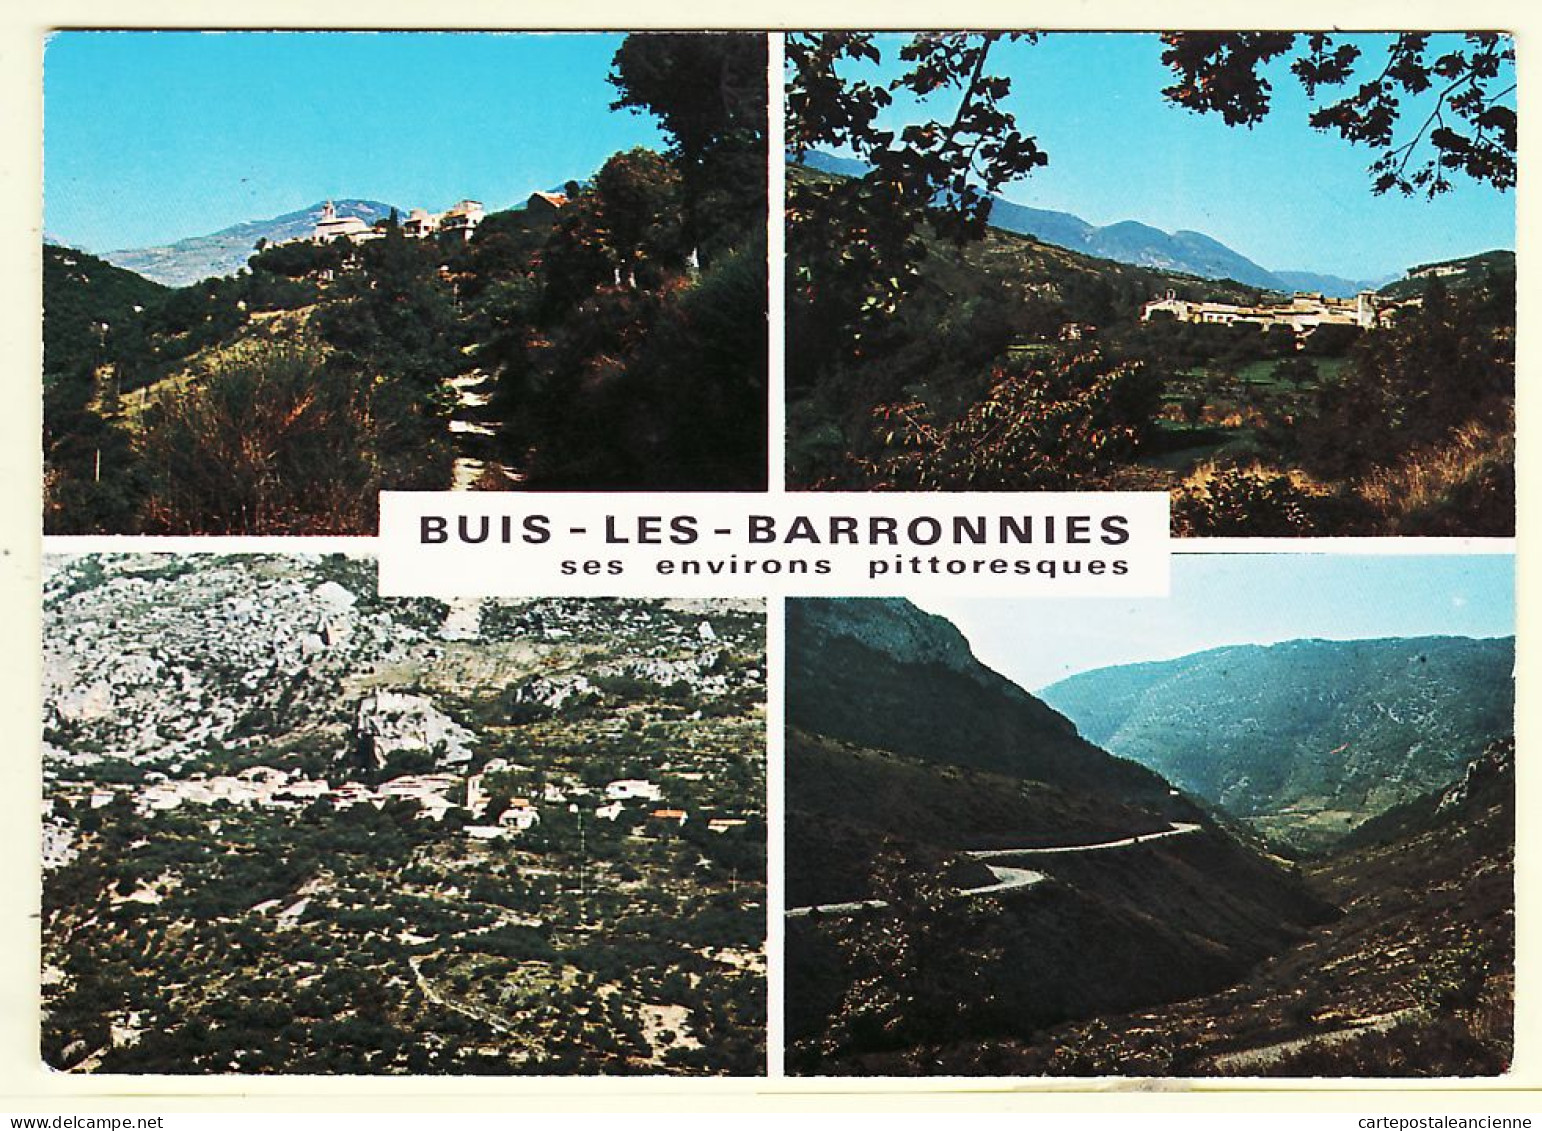 22548 / BUIS-les-BARRONNIES Drome Environs Pittoresques Roche BUIS Sainte EUPHEMIE AUBAN OUVEZE1980s-G.A.L. Carpentras 5 - Buis-les-Baronnies